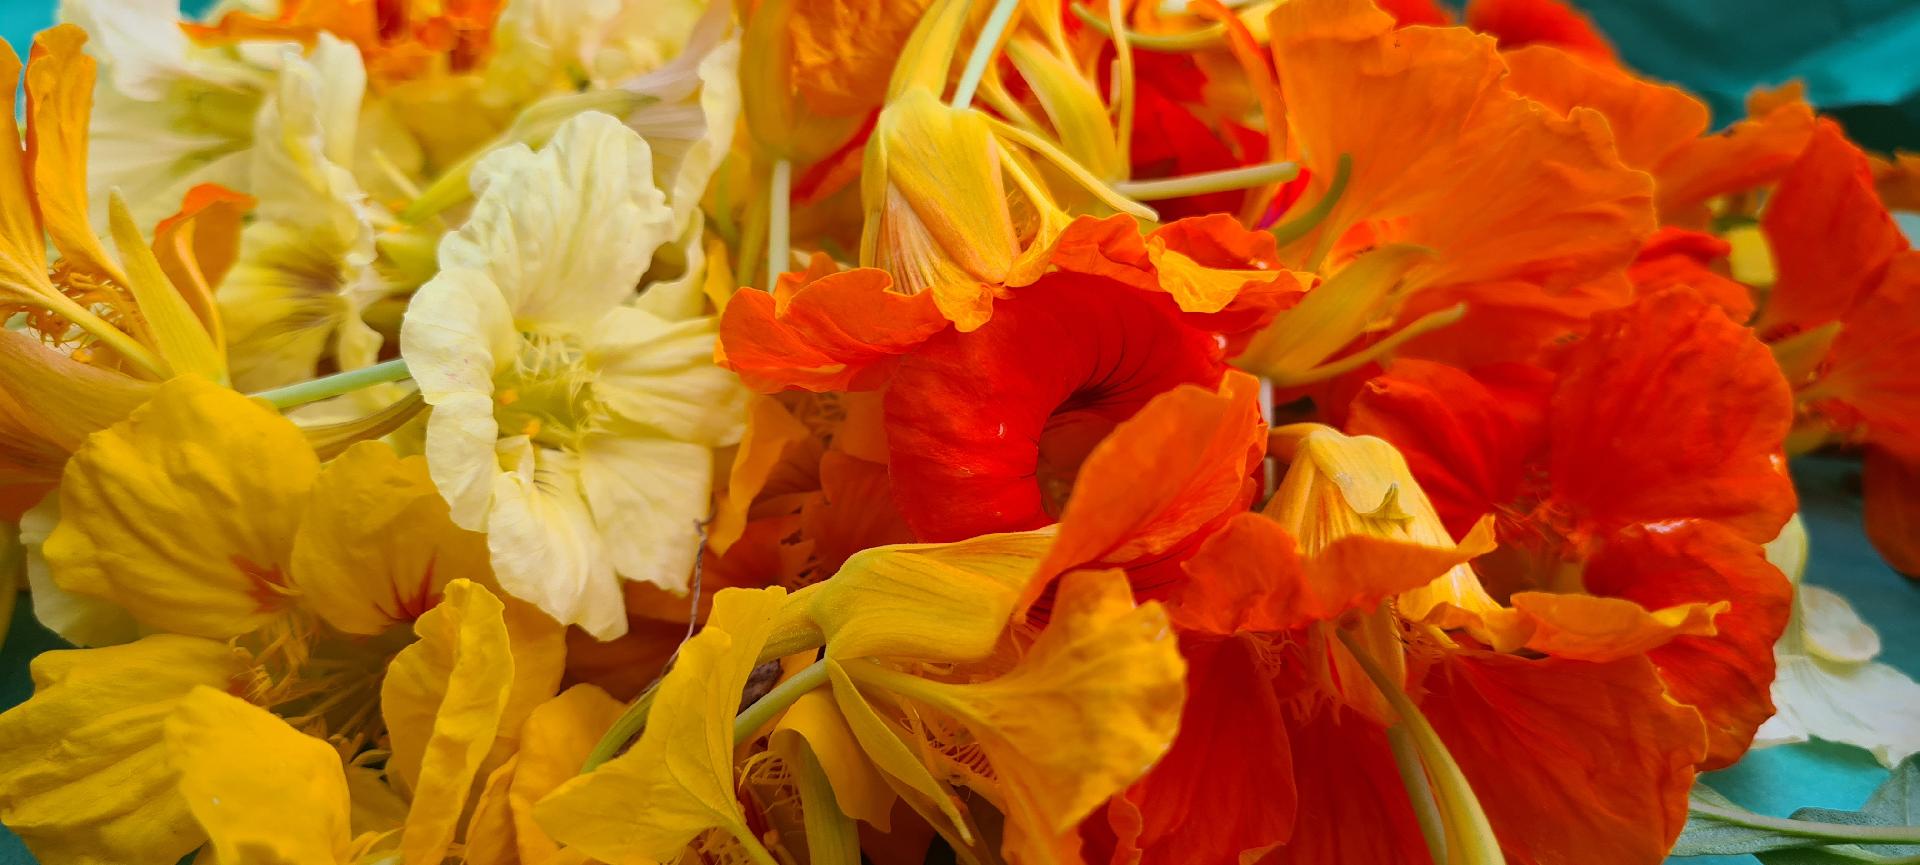 Les fleurs de Capucine : décorer et accompagner vos plats